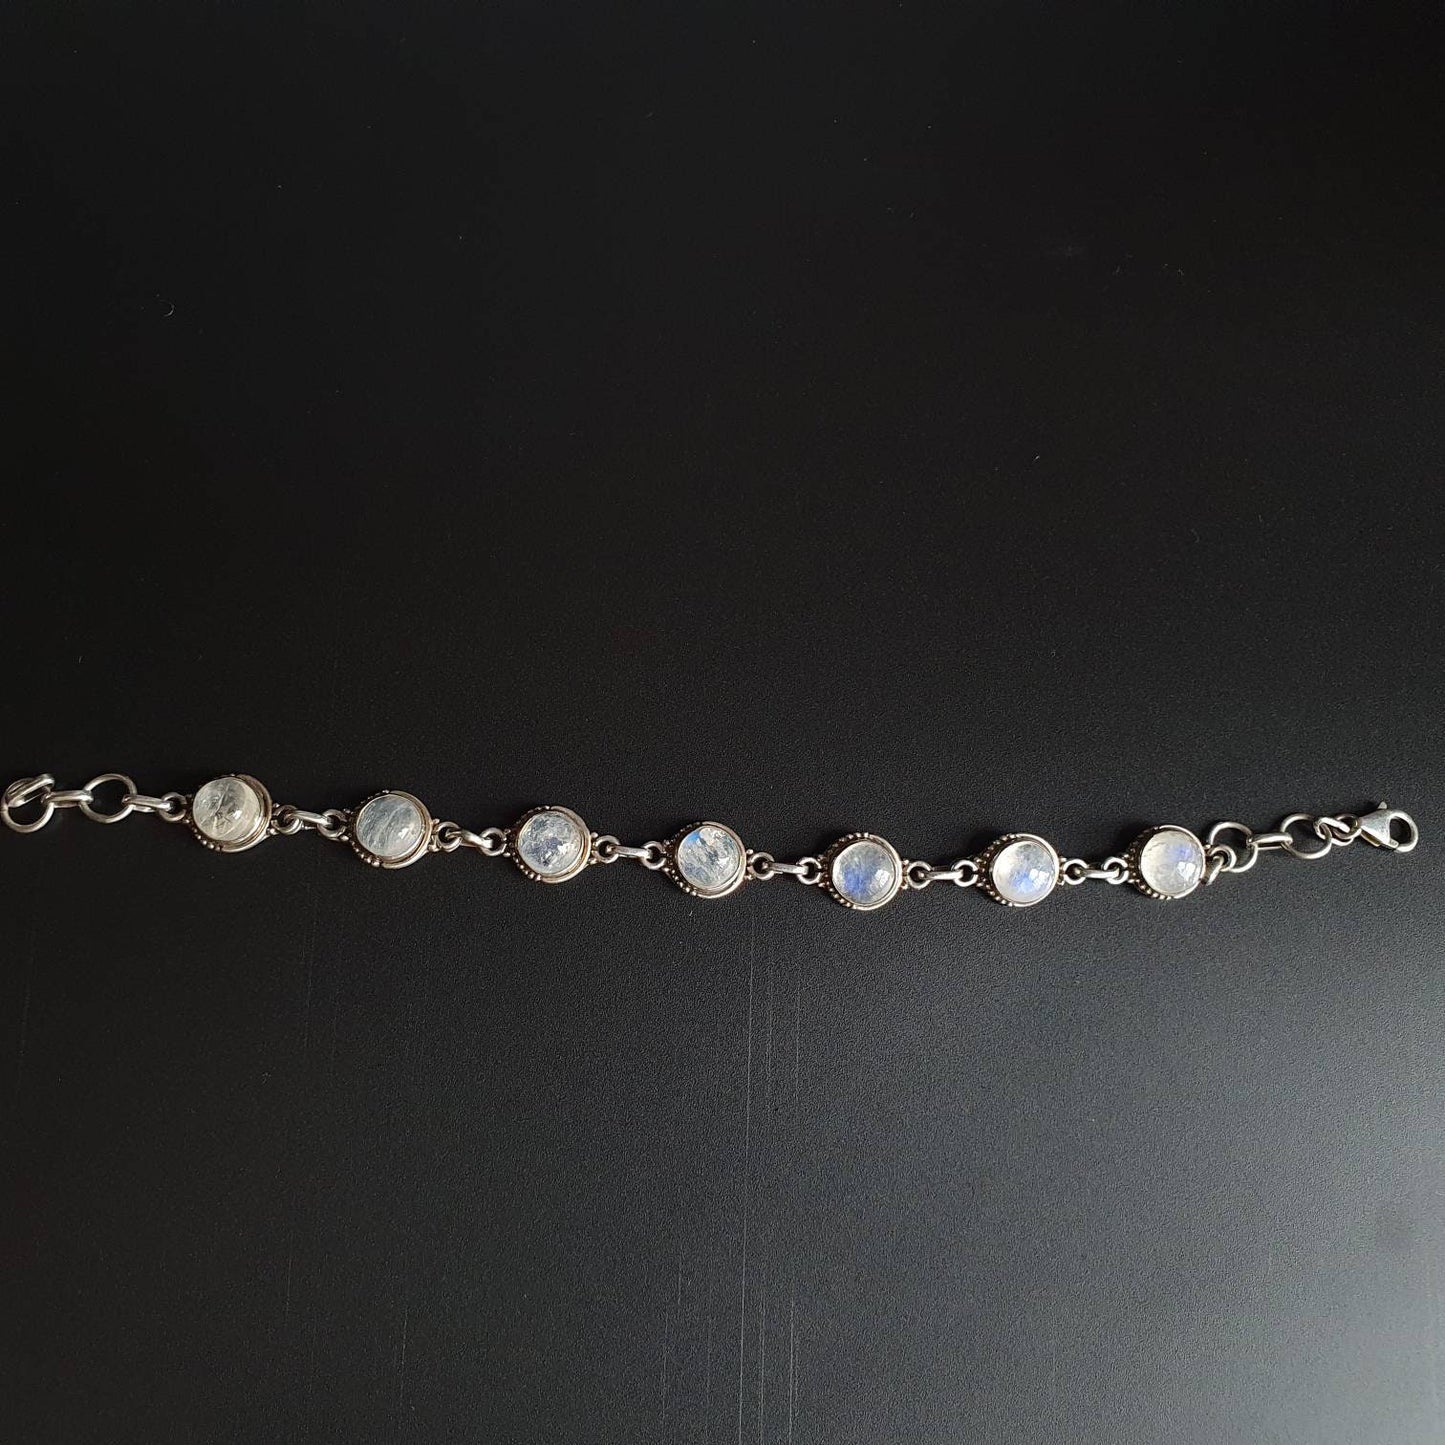 Moonstone stone bracelet - Blue Moonstone bracelet, gifts, unisex, bracelet , Moonstone - Blue moonstone sterling silver